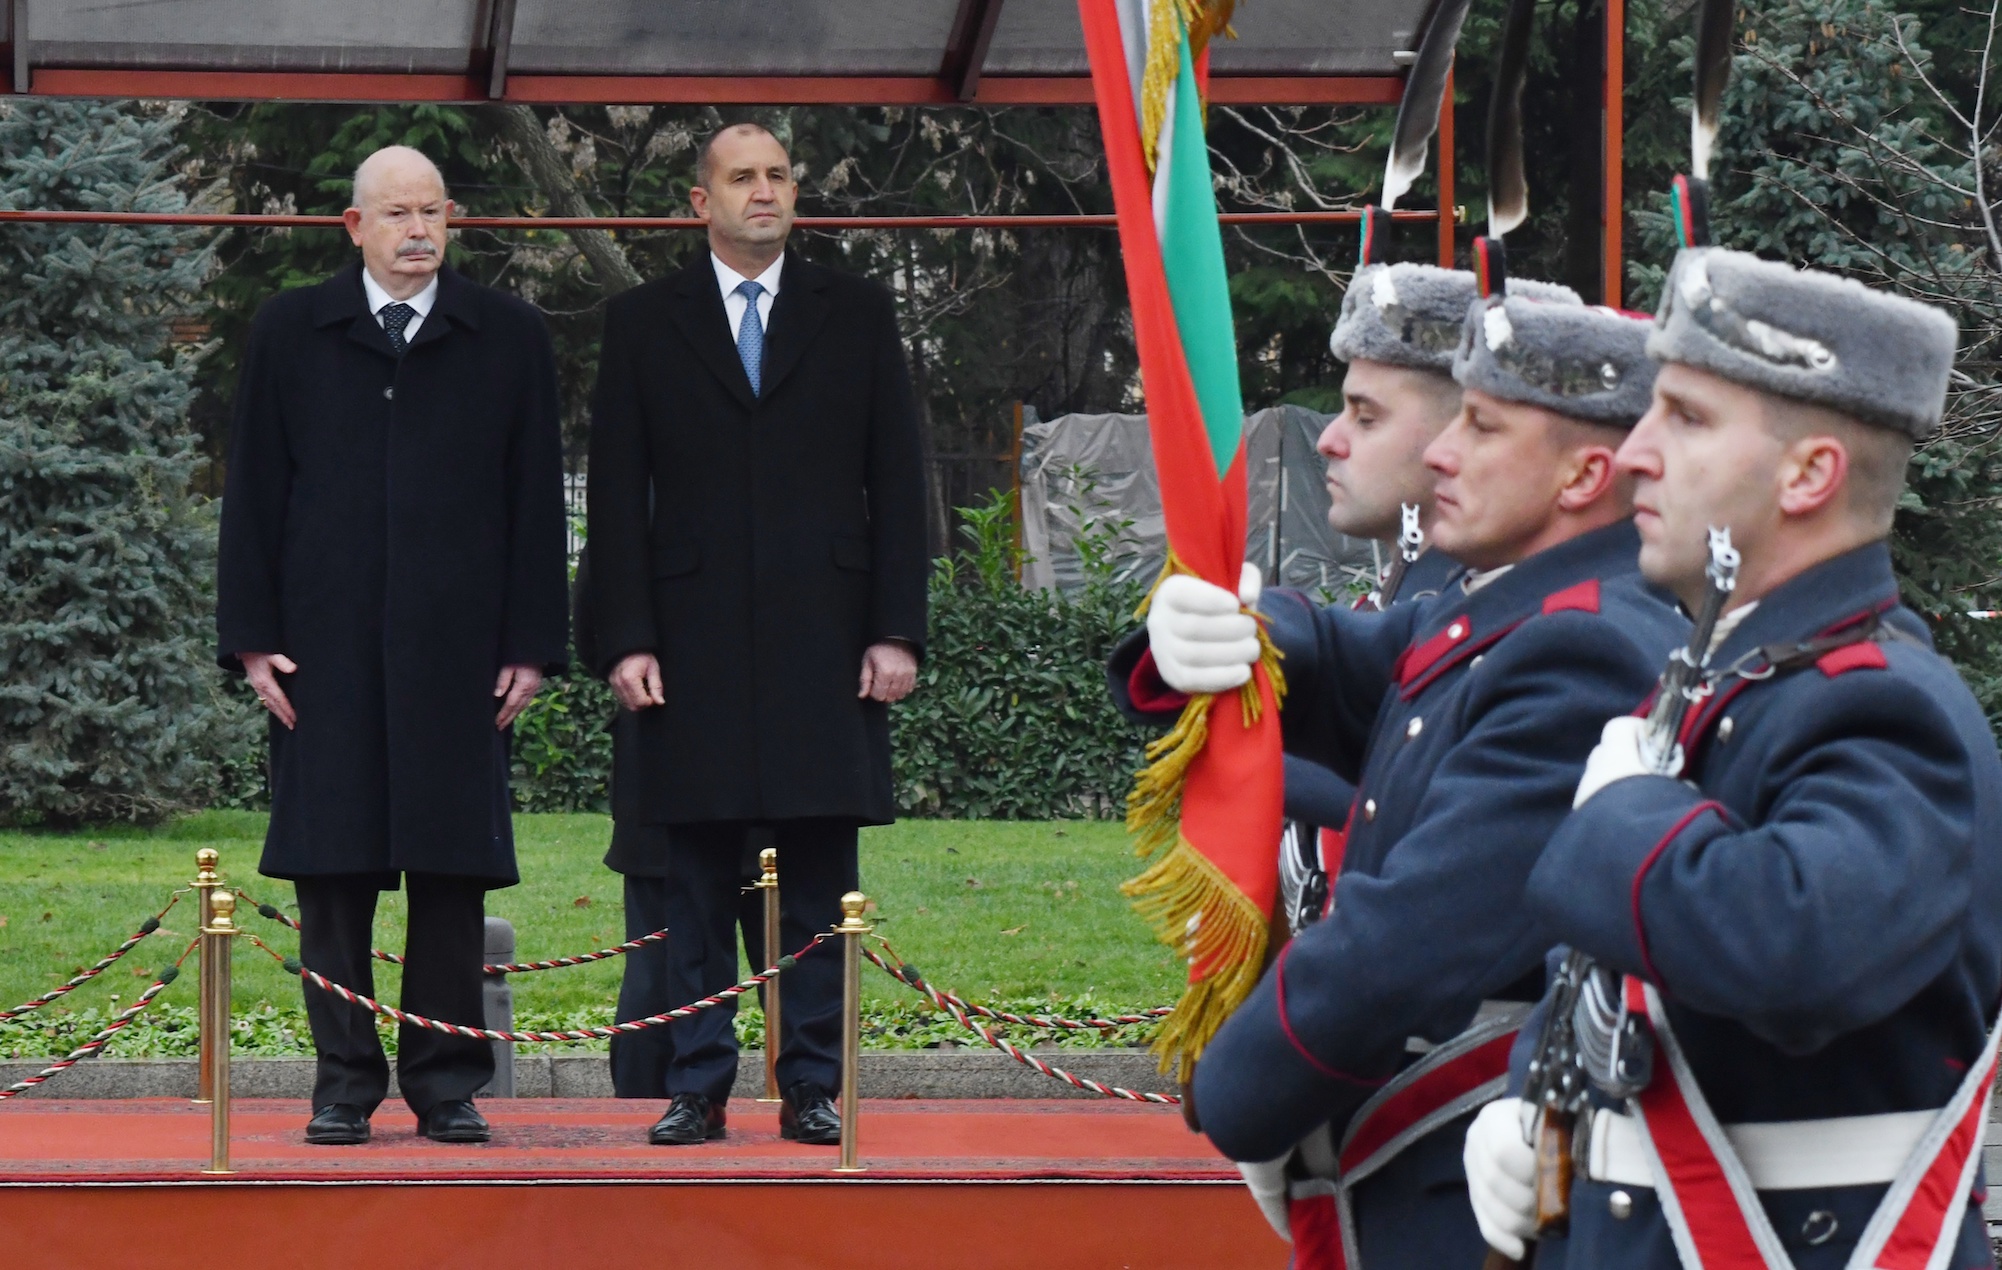 Il Gran Maestro Fra’ Giacomo Dalla Torre in Visita di Stato nella Repubblica di Bulgaria. Presidente Radev: “Vostro lavoro fonte di ispirazione”